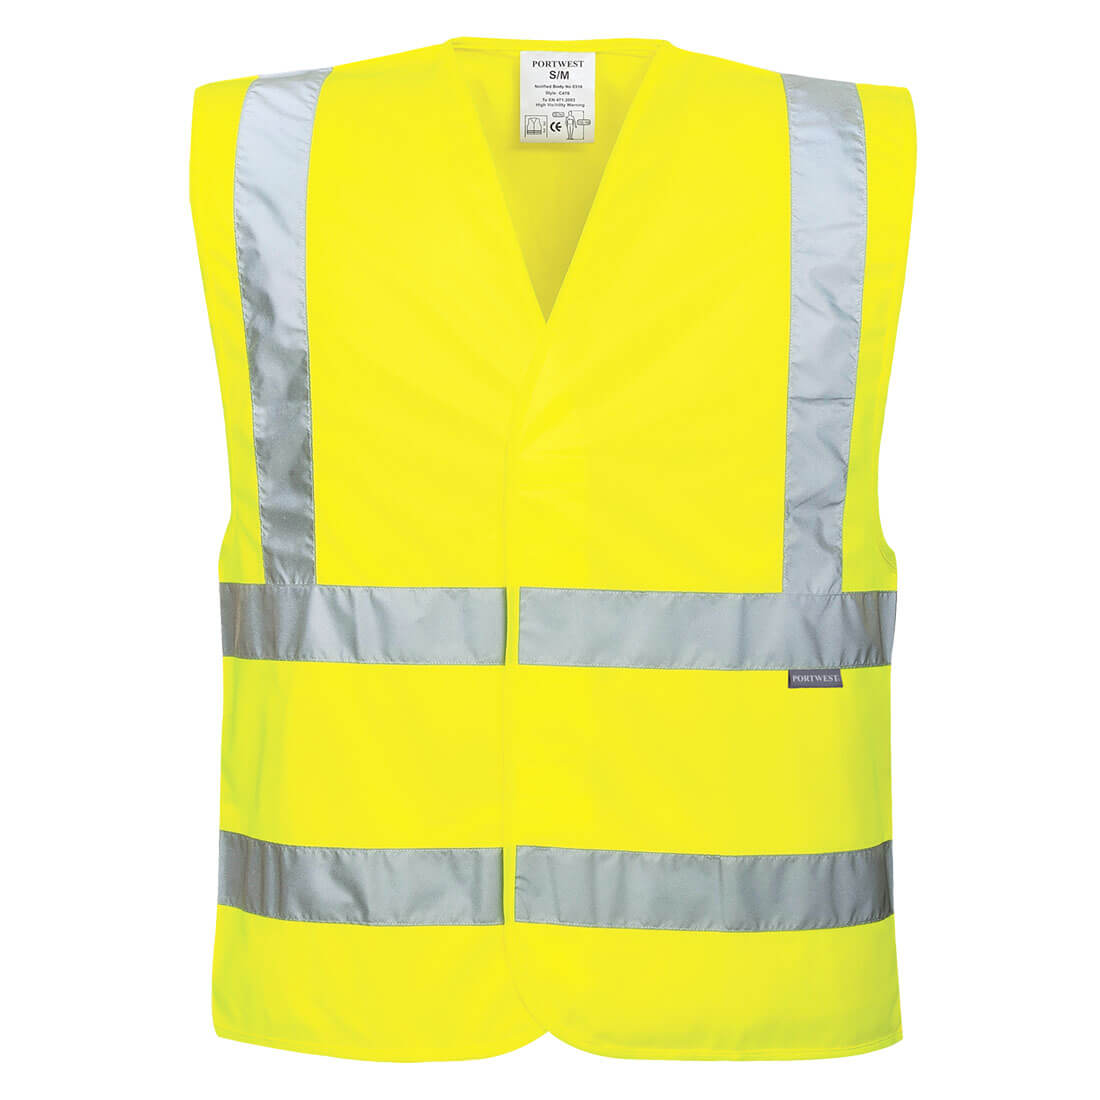 Portwest® Planet EC76 Eco-Friendly Hi-Vis Yellow Bio-Based Vests, Class 2 (10pk)